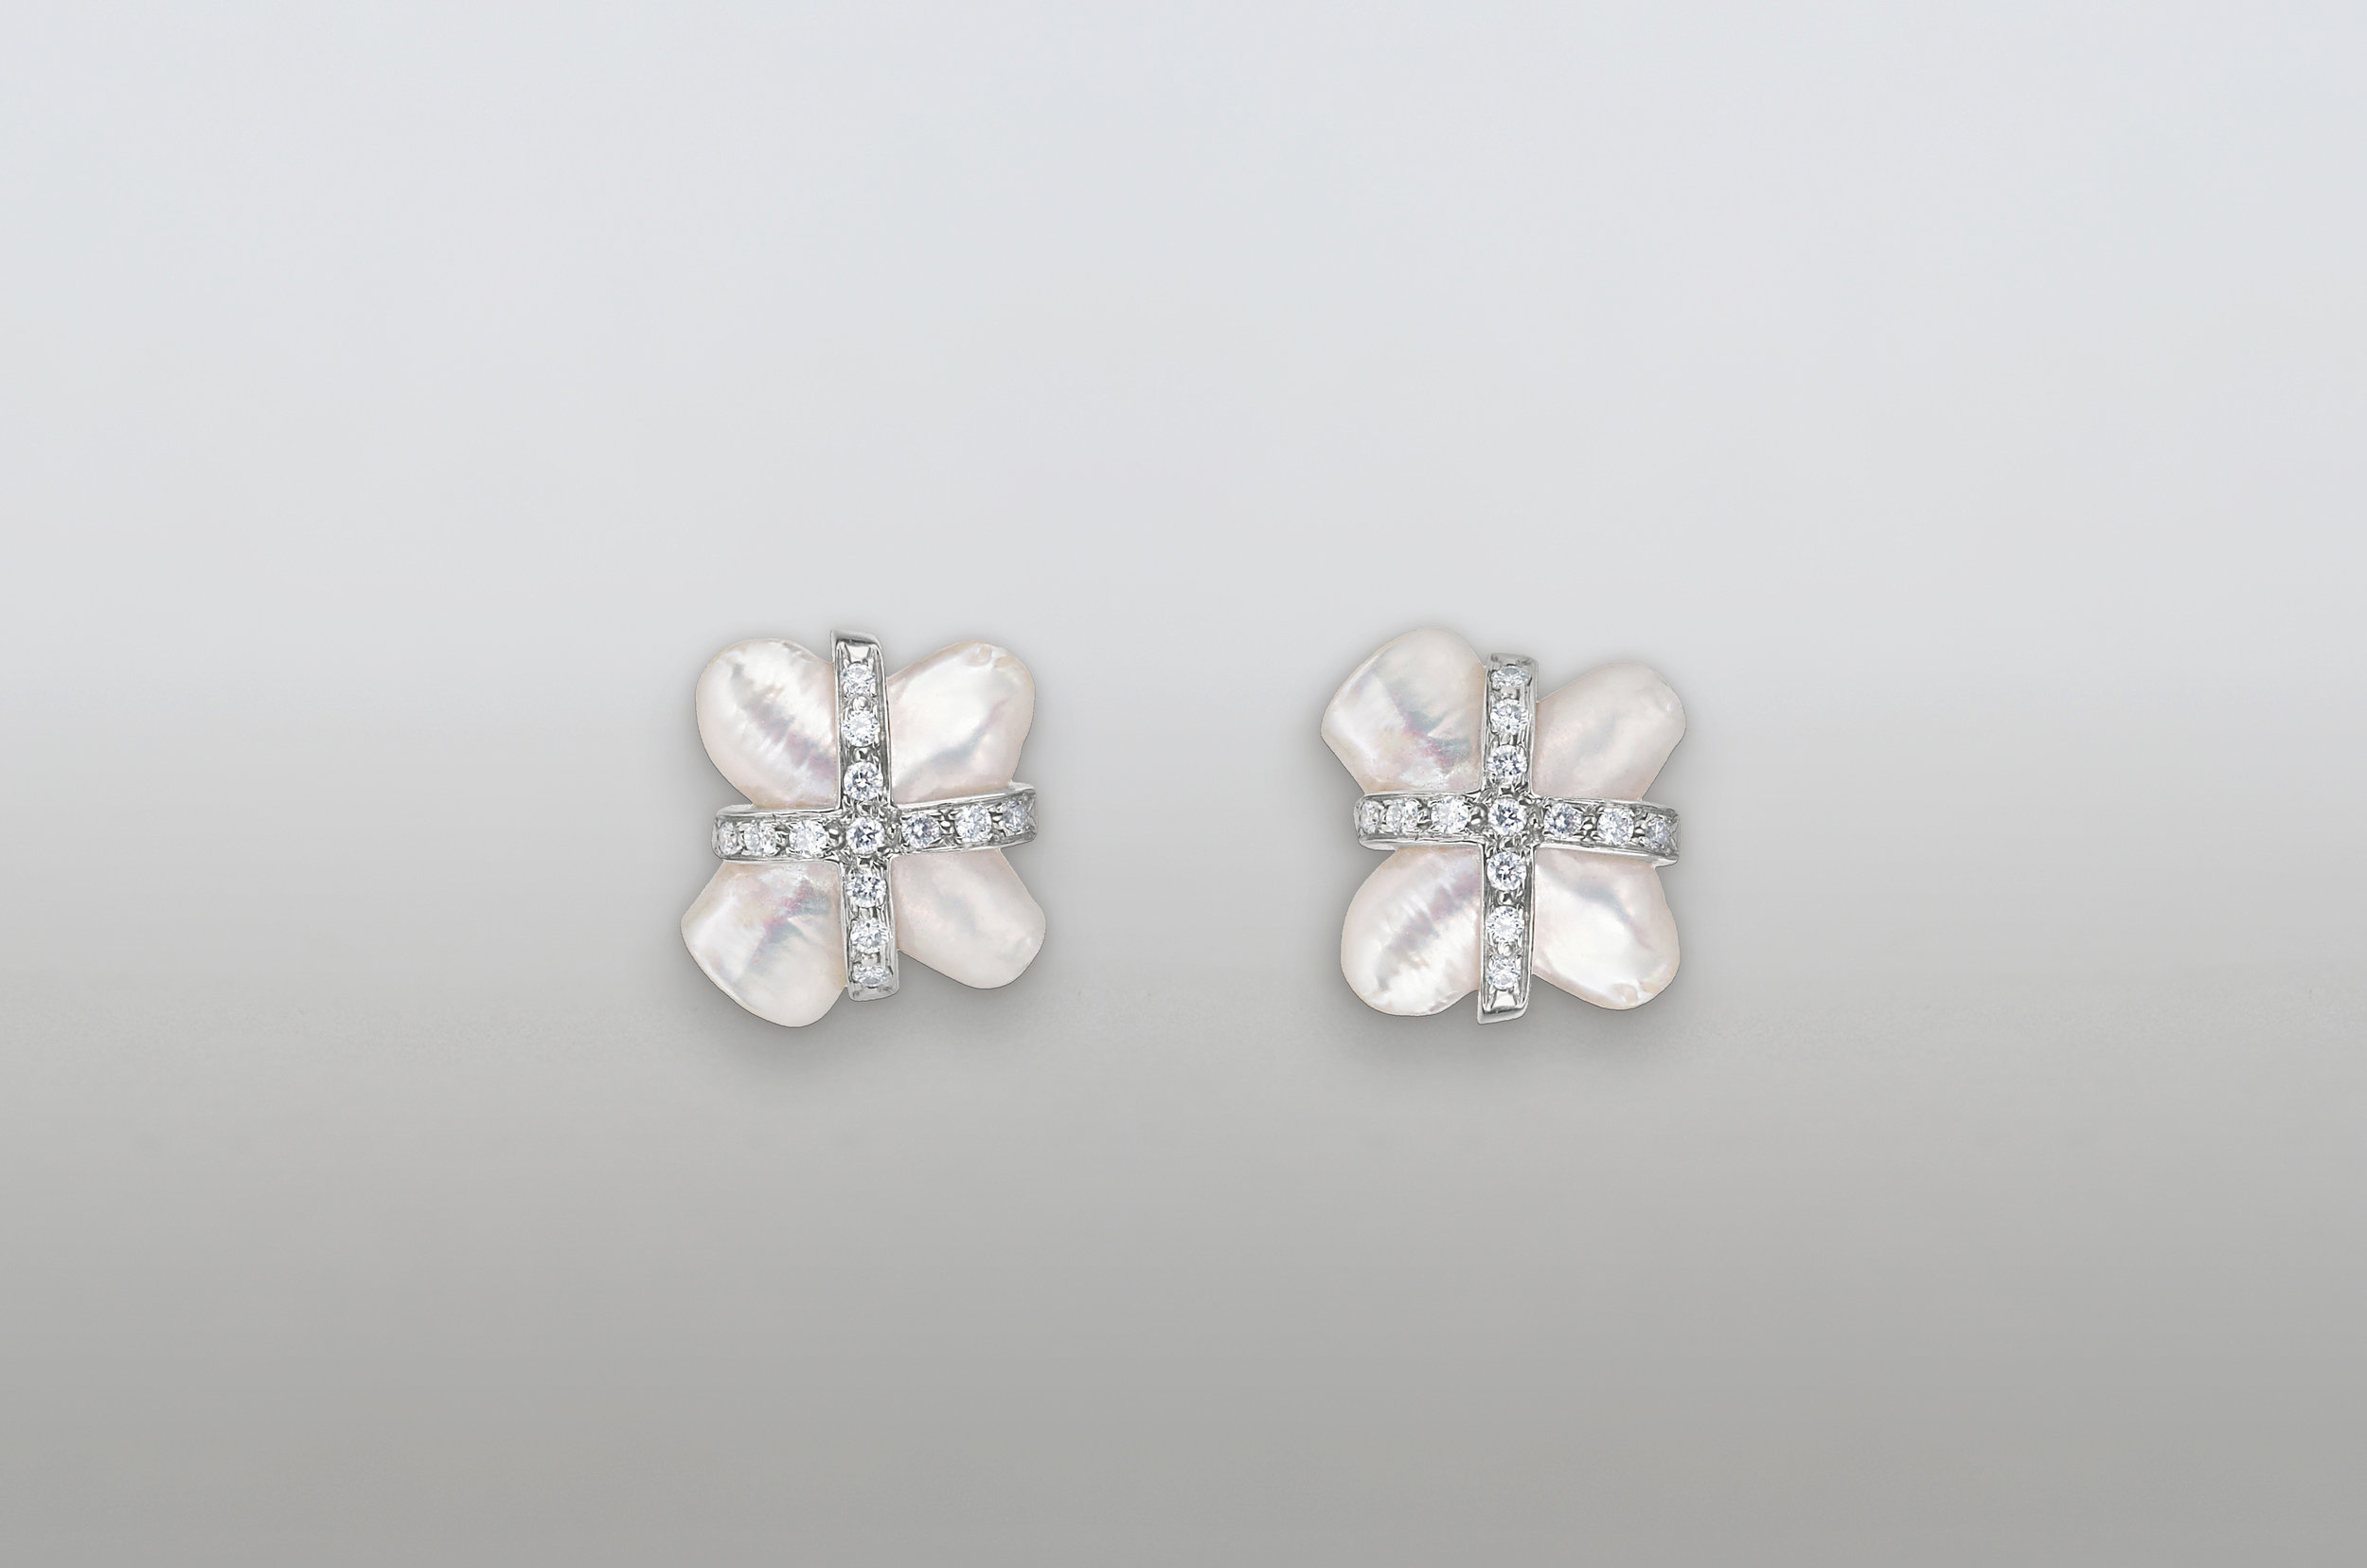 White Cross Earrings from dealer.4.jpg